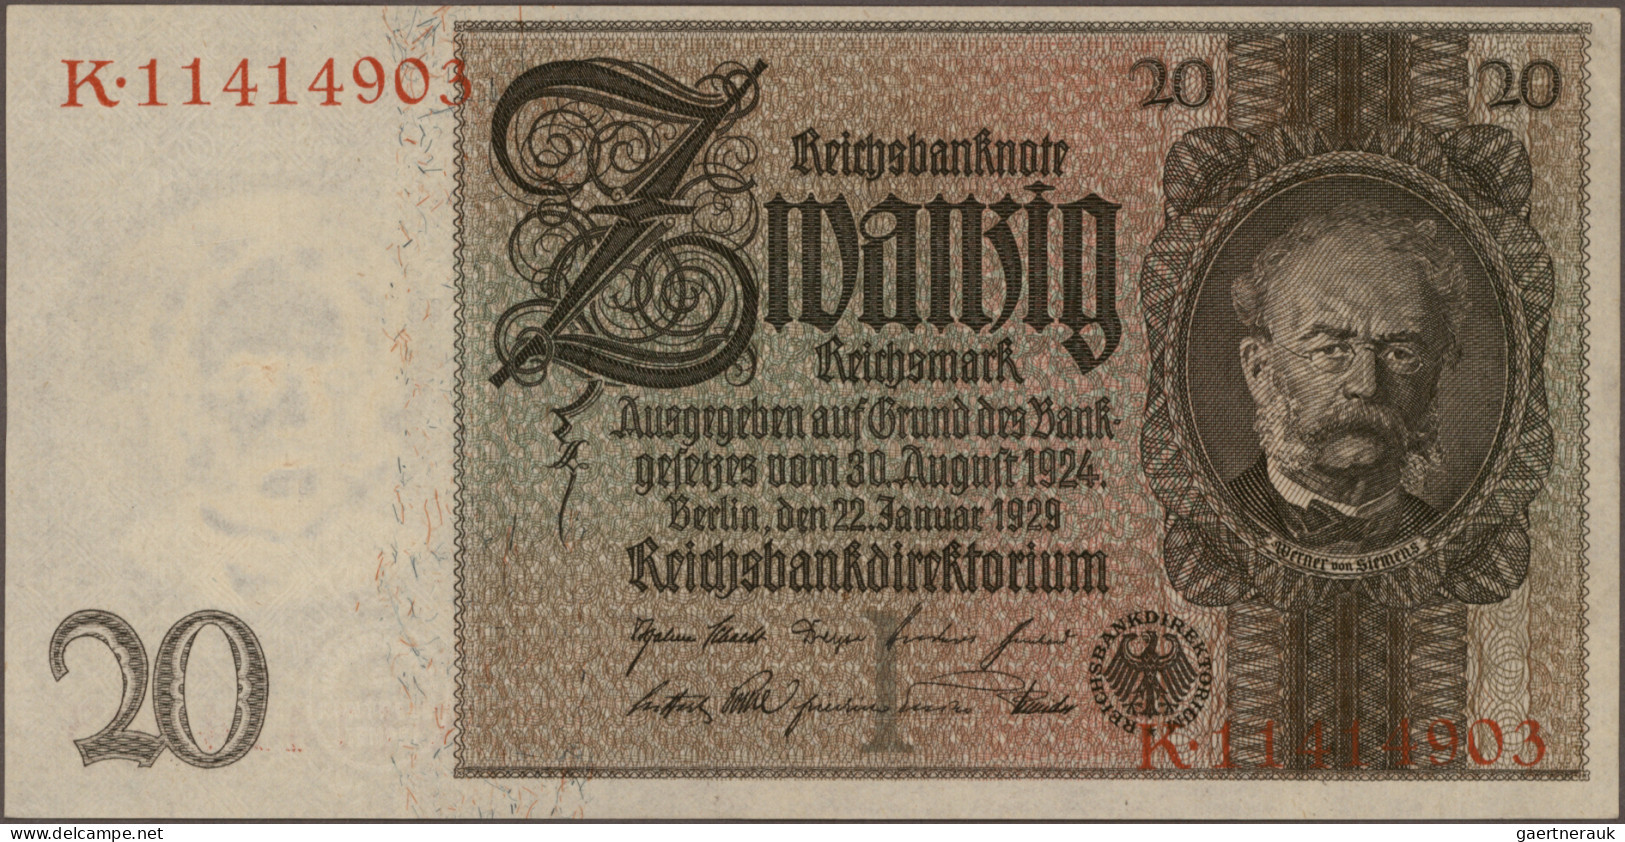 Deutschland - Deutsches Reich bis 1945: Schachtel mit mehr als 1.300 Banknoten D